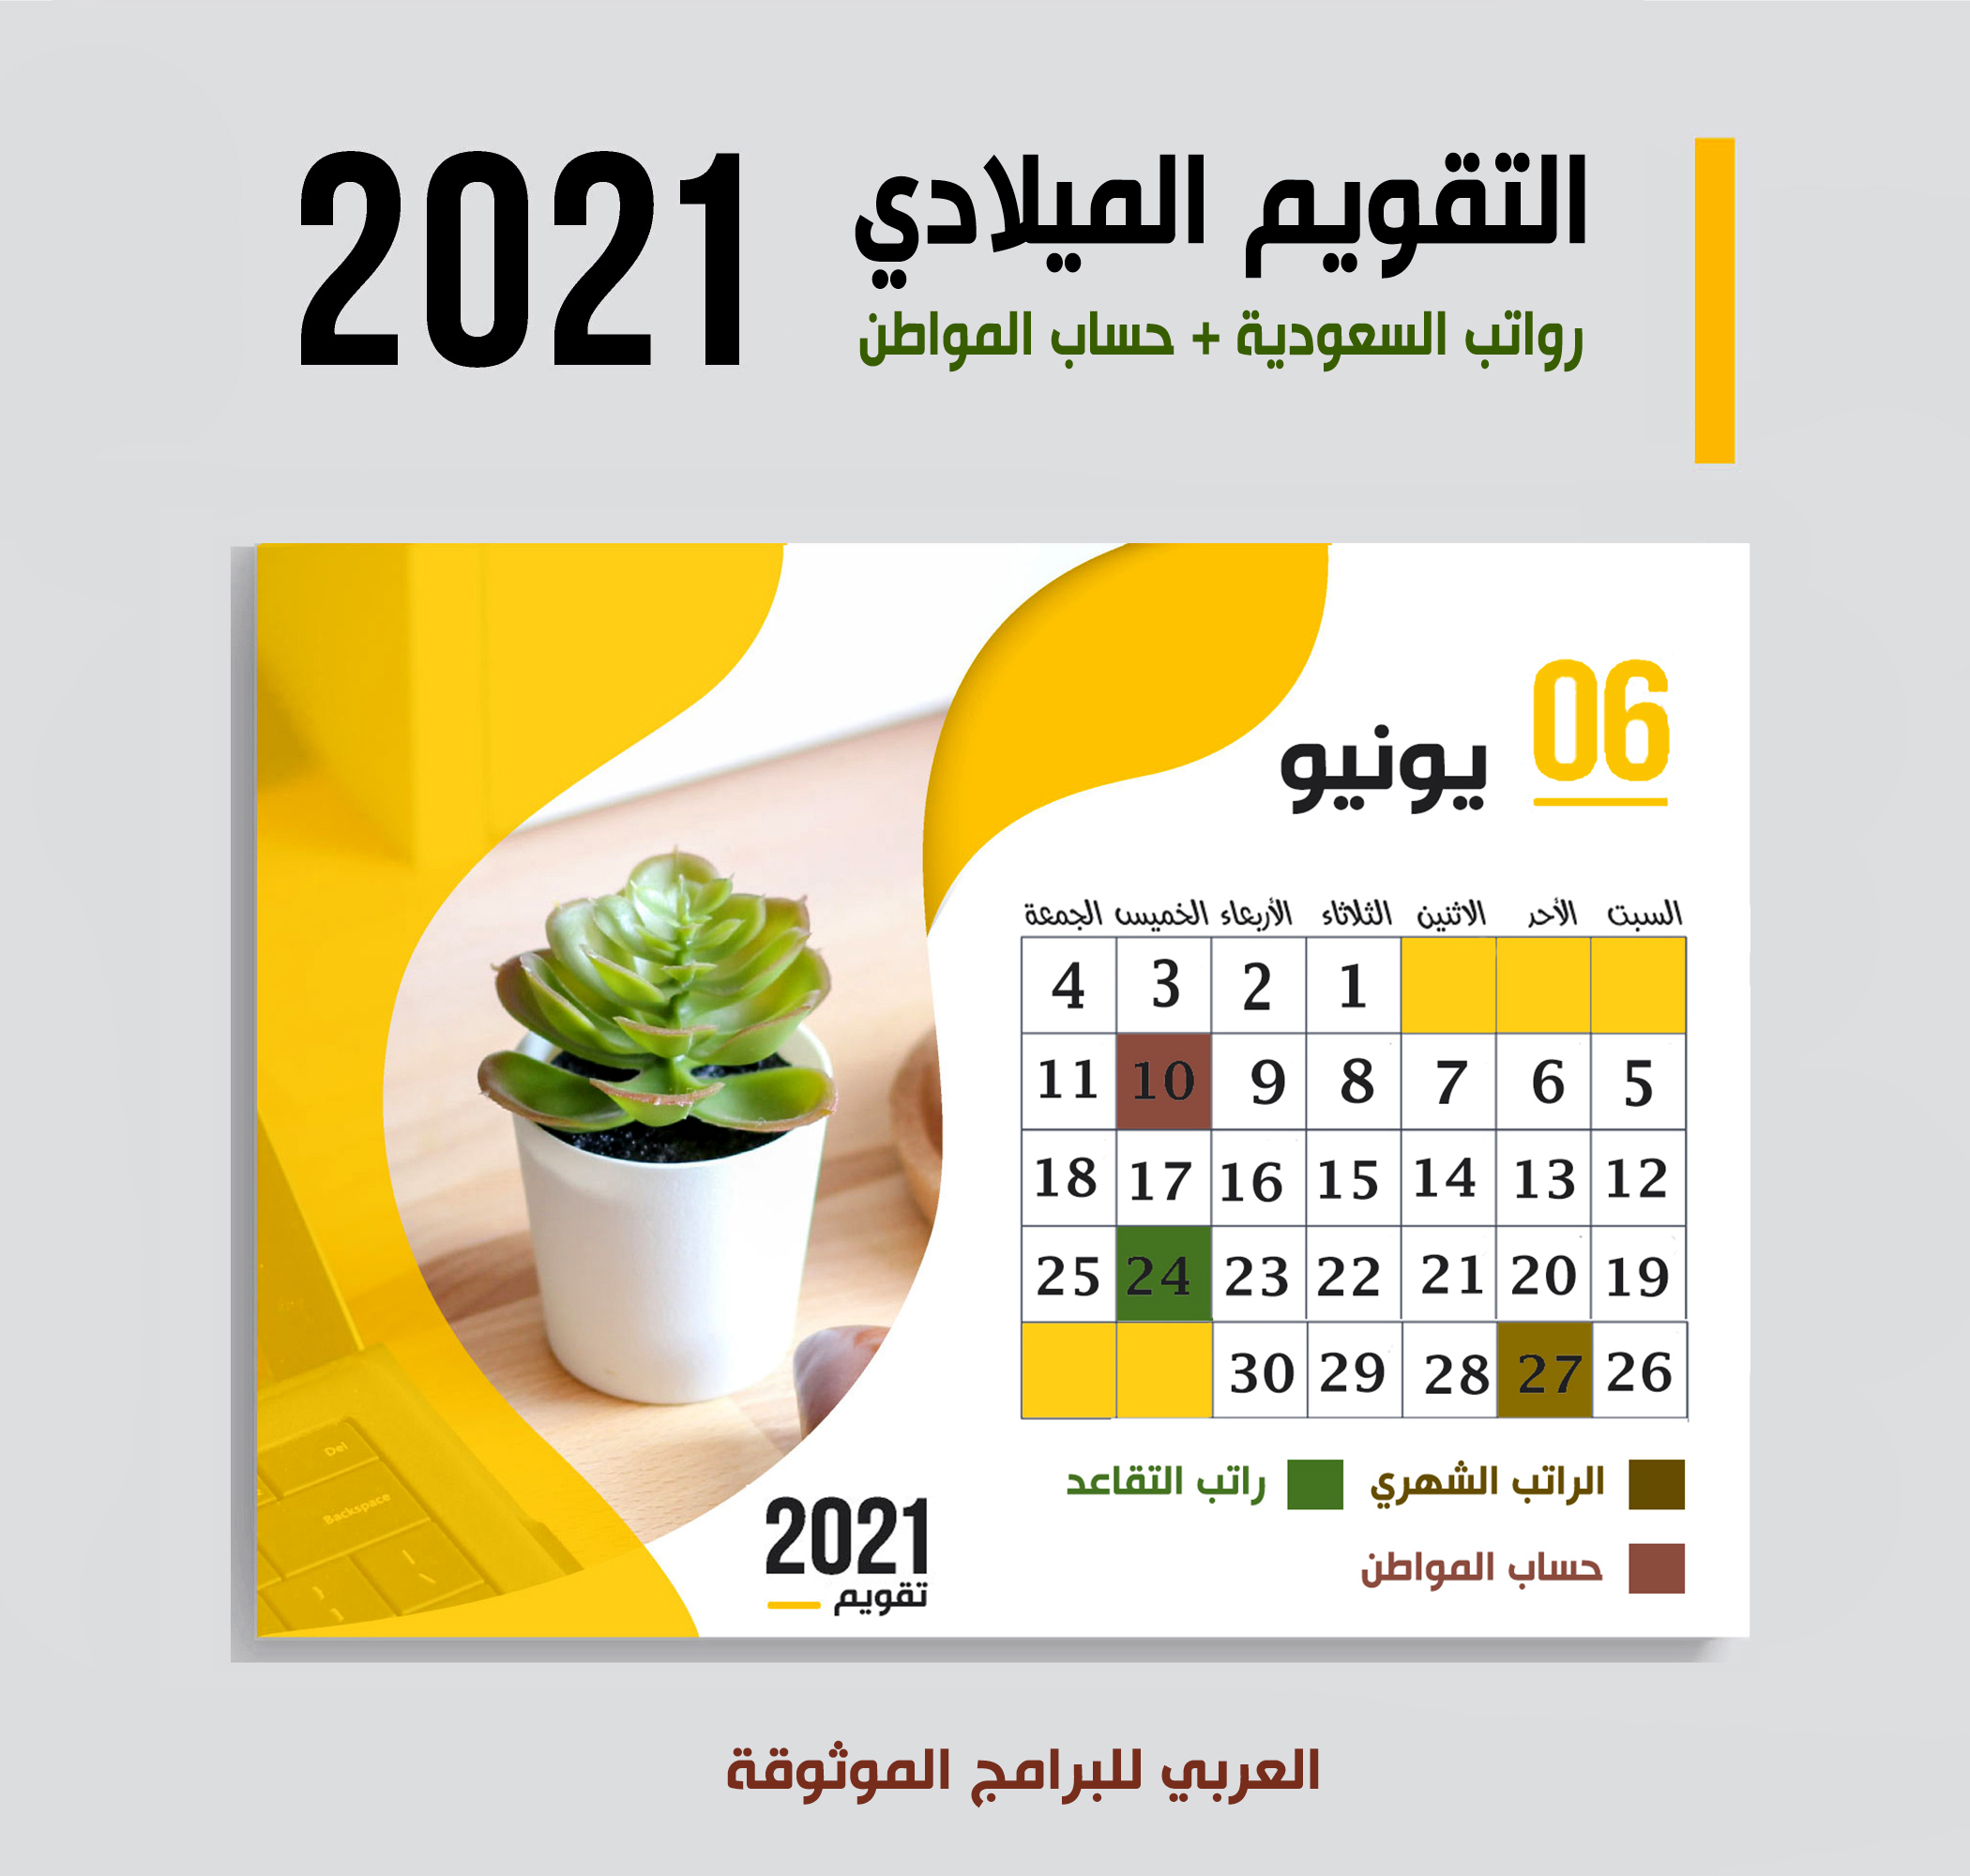 موعد صرف رواتب السعودية شهر يونيو 2021 موعد حساب المواطن + رواتب المتقاعدين 